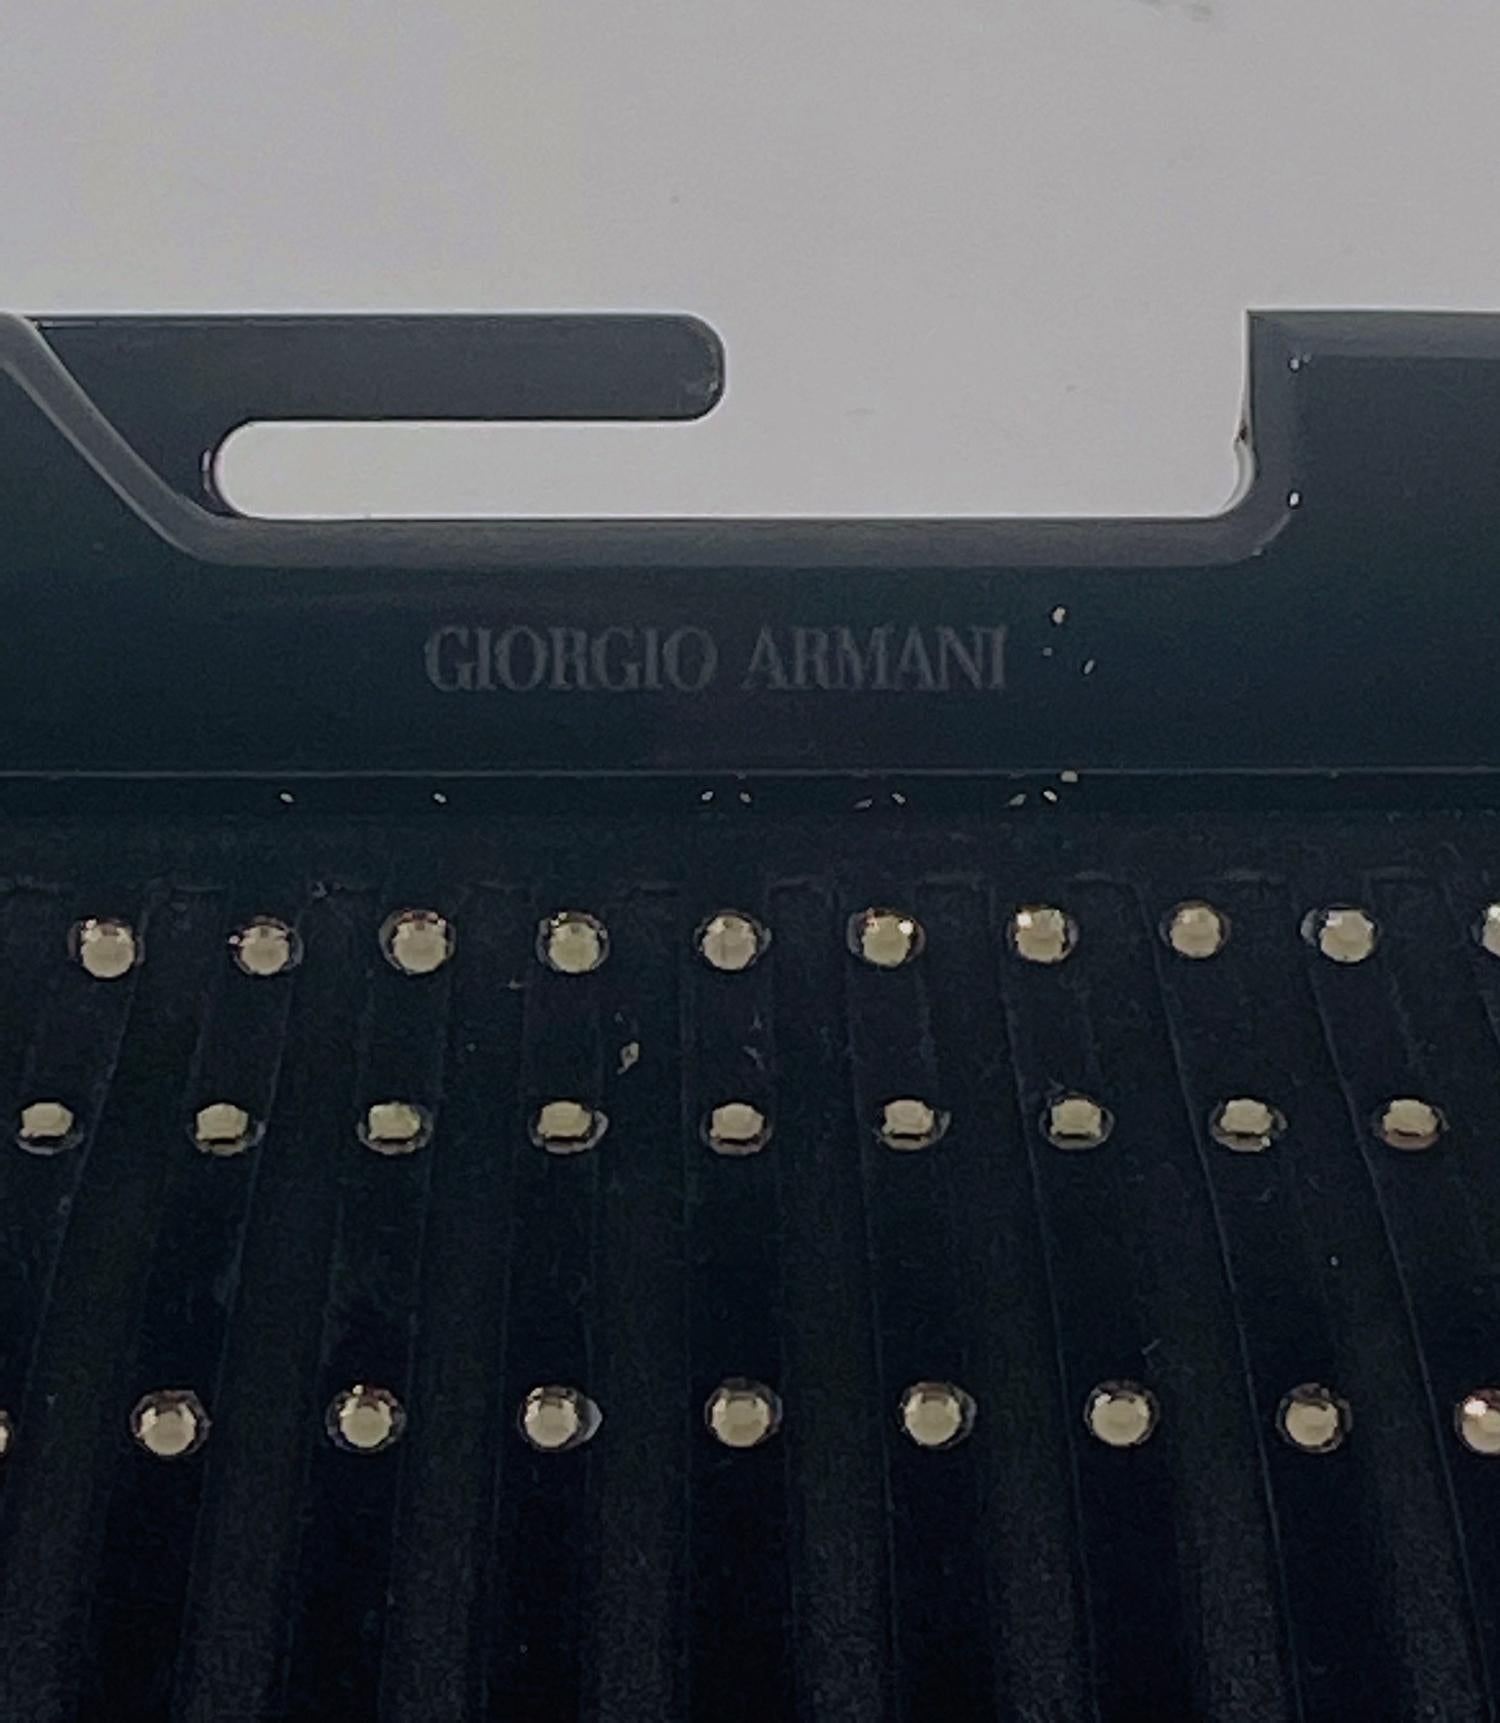 Sac de soirée Giorgio Armani en daim noir et satin noir serti de cristaux Swarovski, le sac a un cadre acrylique noir et une fermeture à bouton pression. Le sac possède une chaîne dorée qui peut être utilisée ou glissée à l'intérieur pour porter le